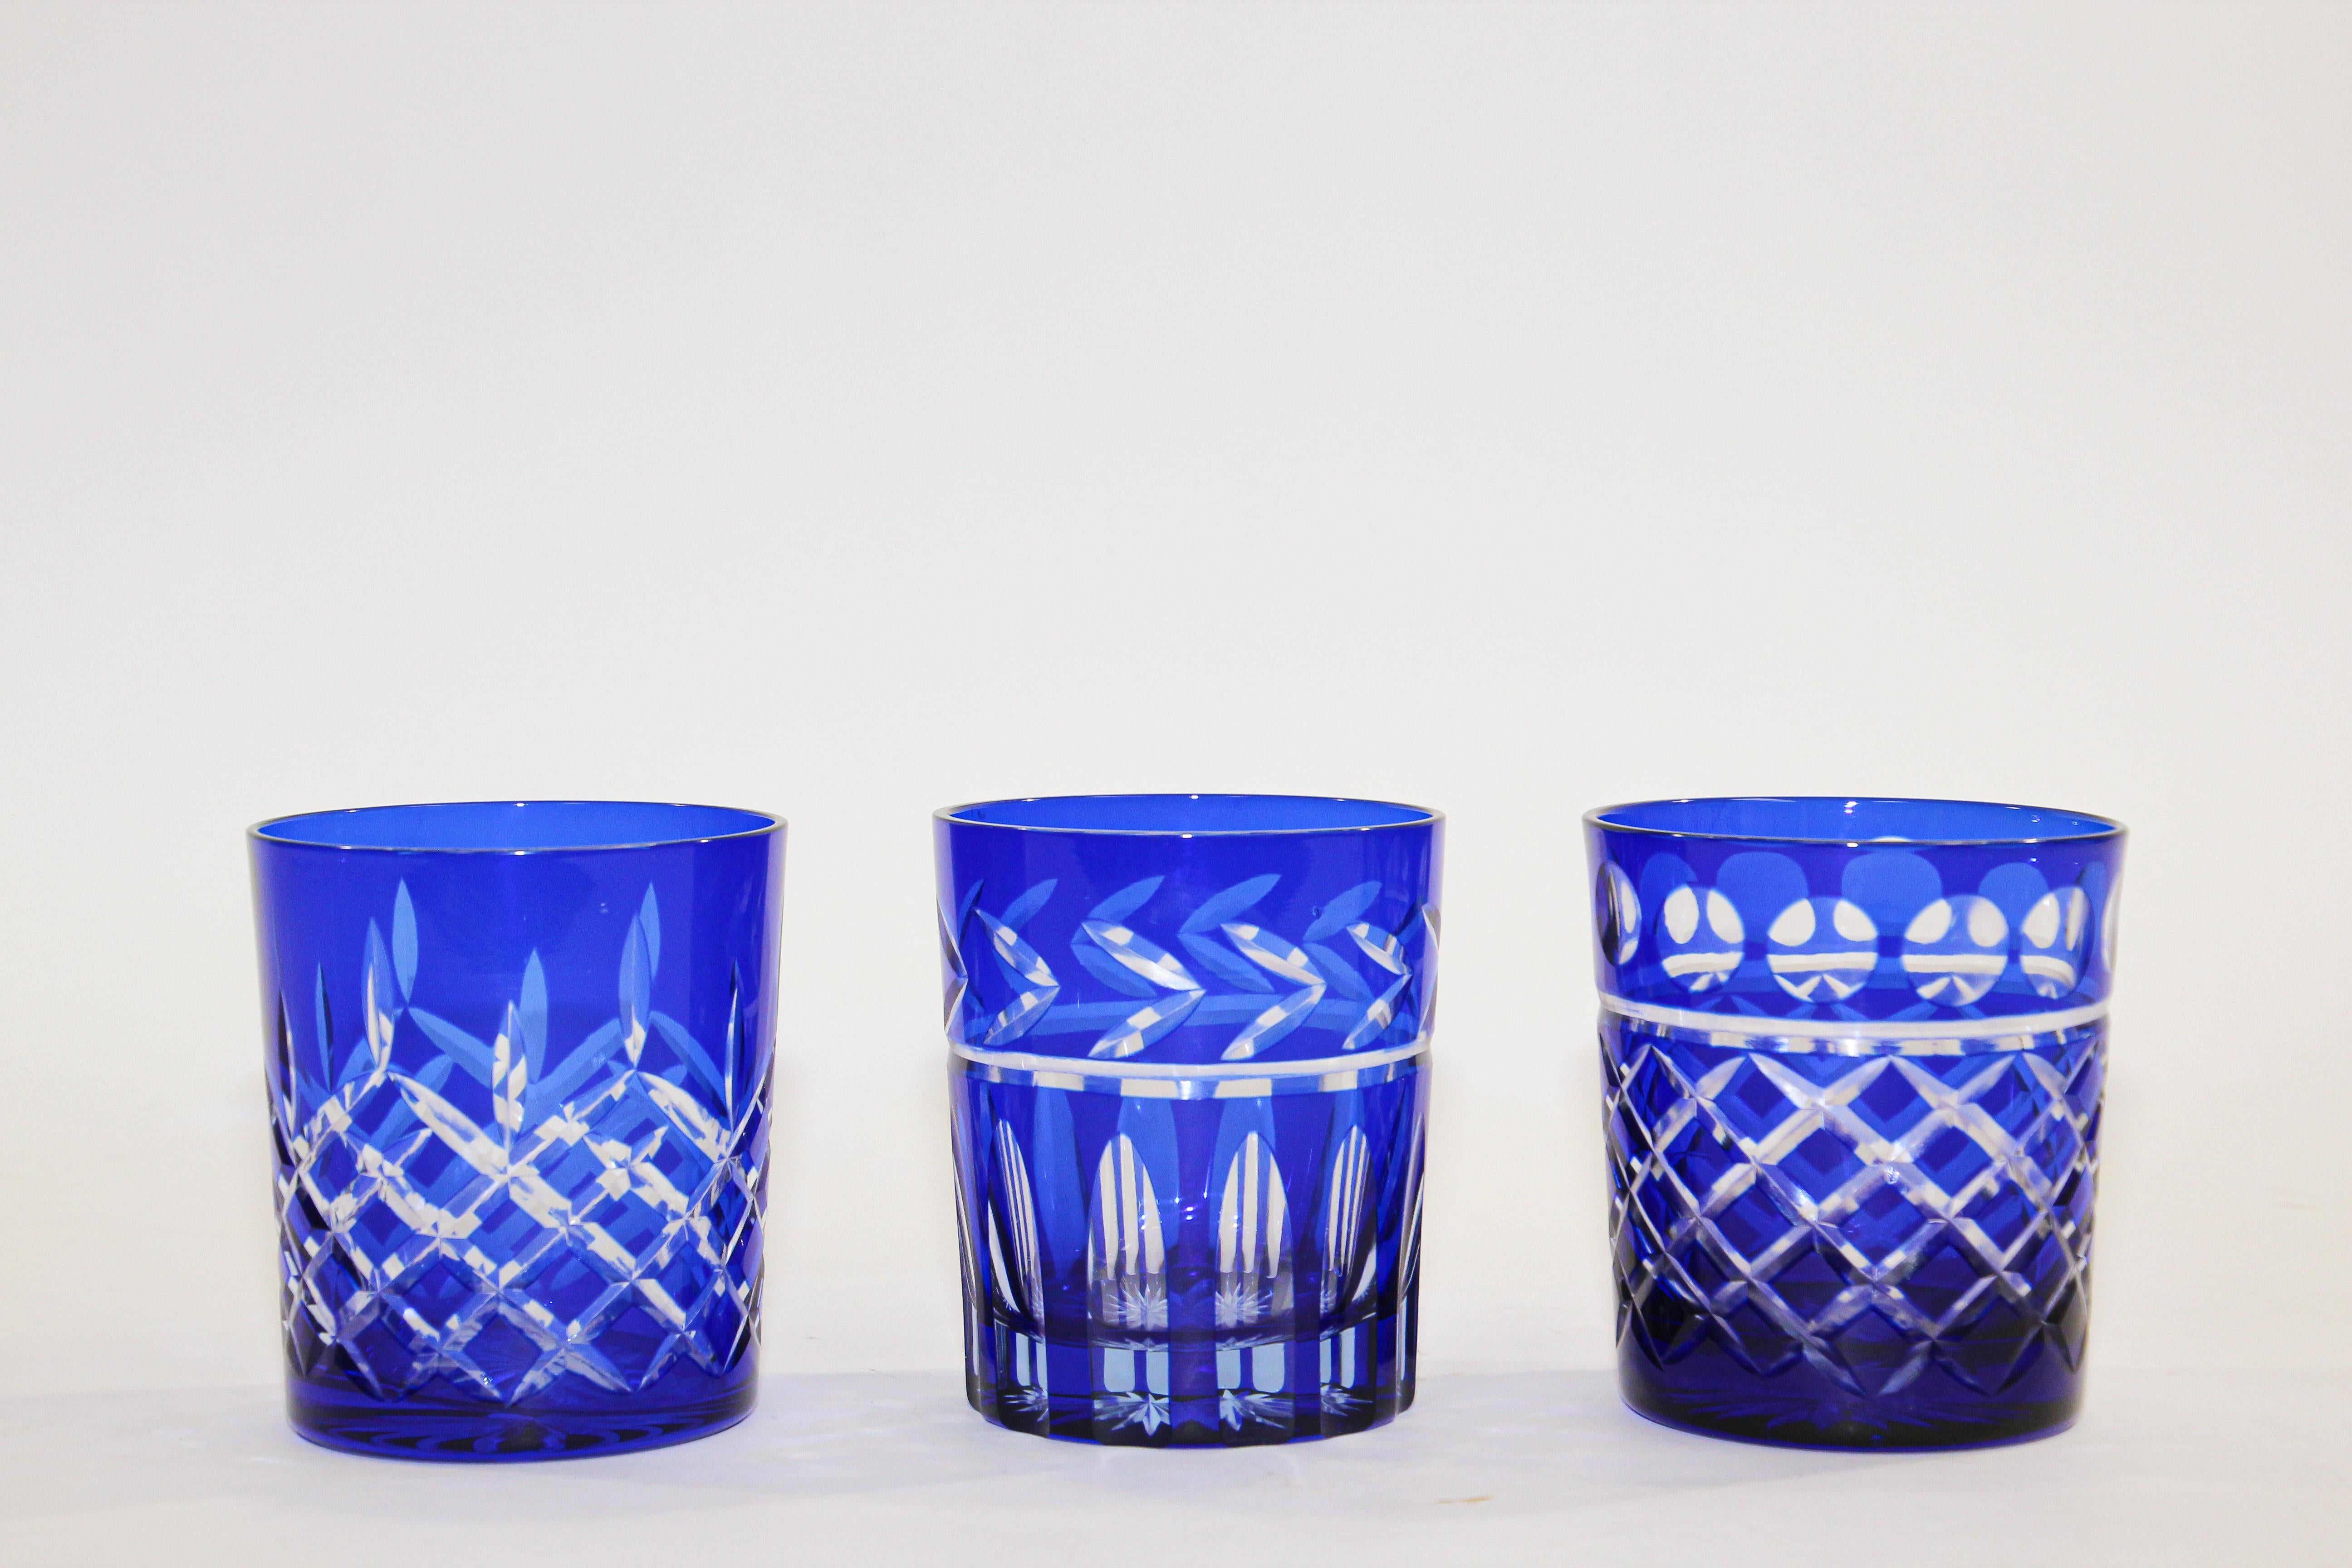 Set de trois verres à whisky tumbler en cristal bleu cobalt style Baccarat. 
Le verre en cristal soufflé à la main, d'un bleu saphir riche et vibrant, est taillé en clair pour révéler un joli motif aux lignes épurées. 
Ensemble de 3 verres à